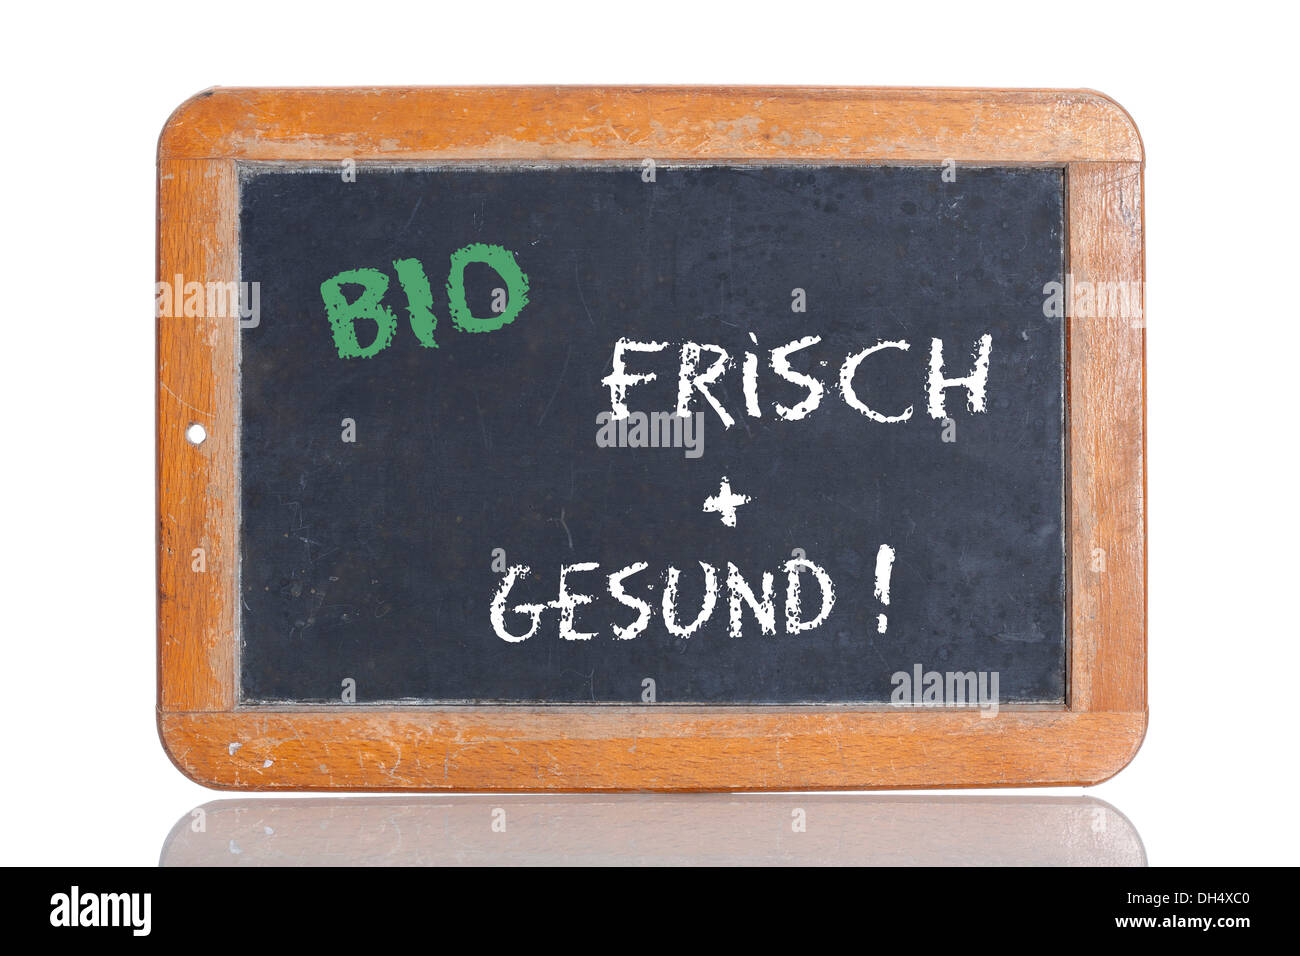 La vieja escuela pizarra con las palabras BIO - FRISCH + GESUND!, Alemán para orgánicos - fresco + saludable! Foto de stock